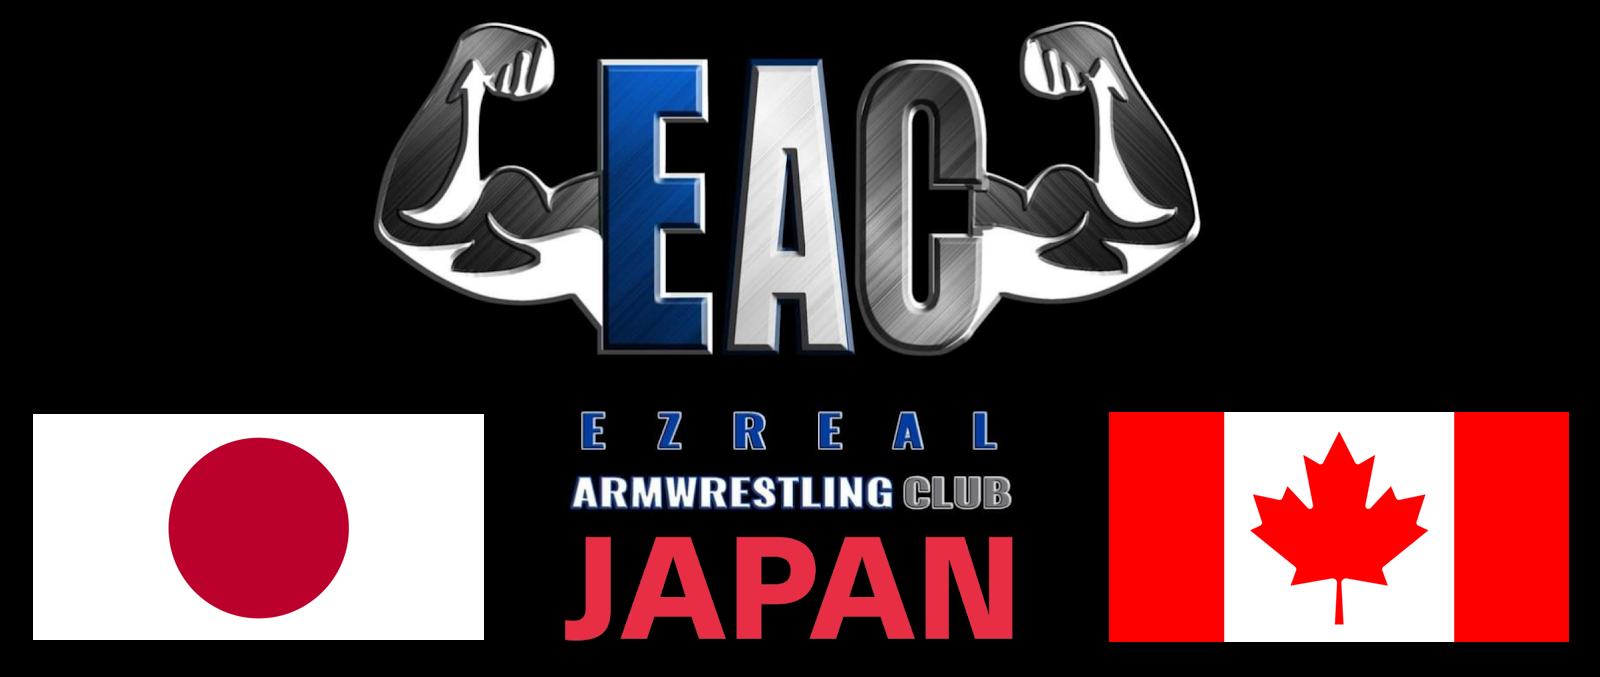 EACアームレスリングトレーニング器具日本正規輸入代理店